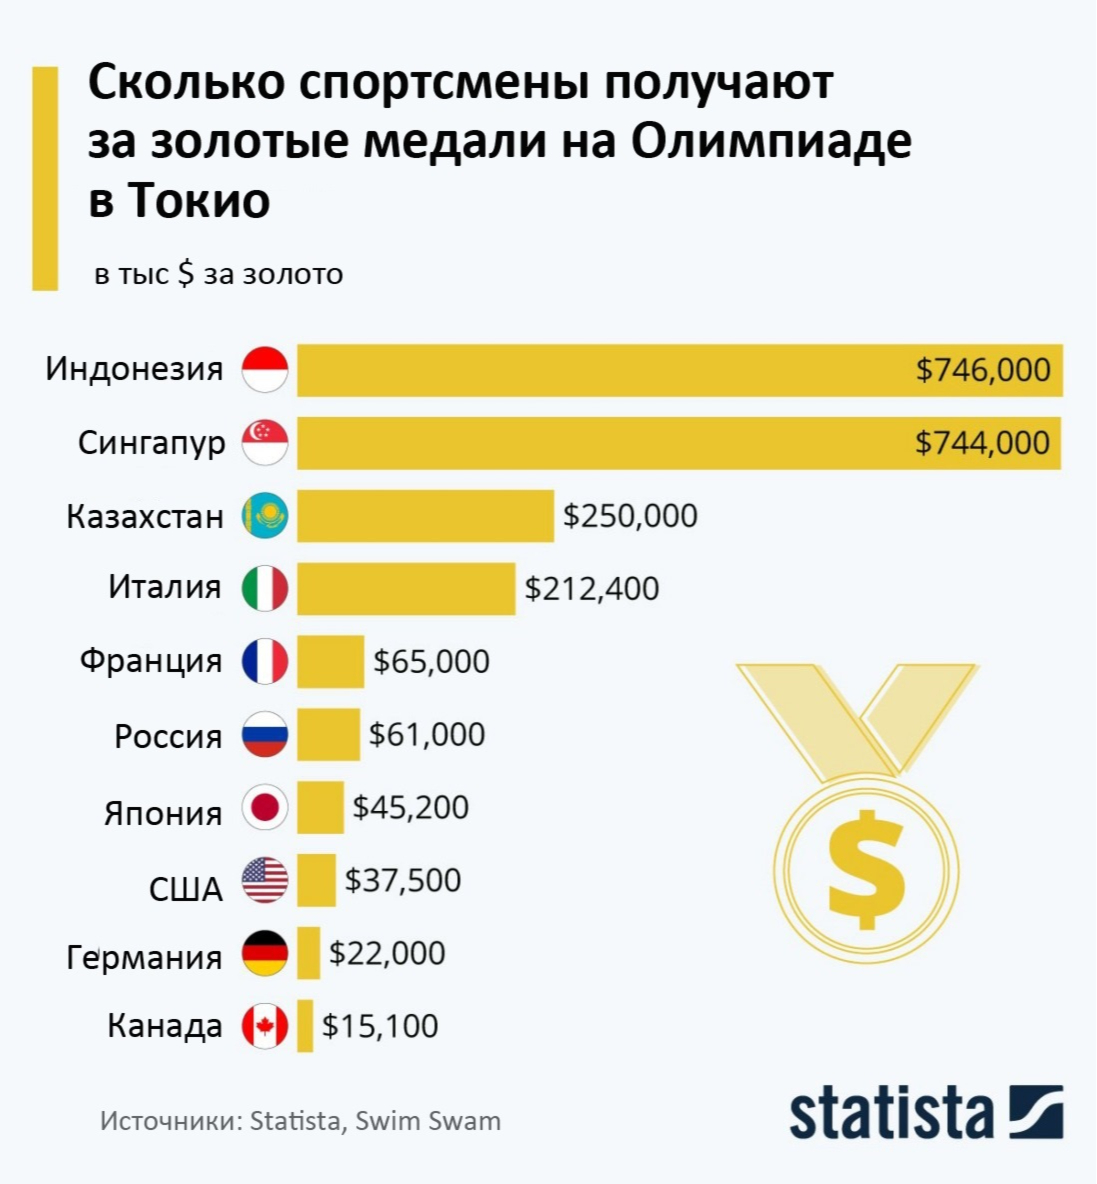 Сколько платит россия украине. Количество спортсменов. Сколько платят страны за Олимпийские медали. Деньги за золотую медаль на Олимпиаде. Сколько получают спортсмены за золотую медаль на Олимпиаде.